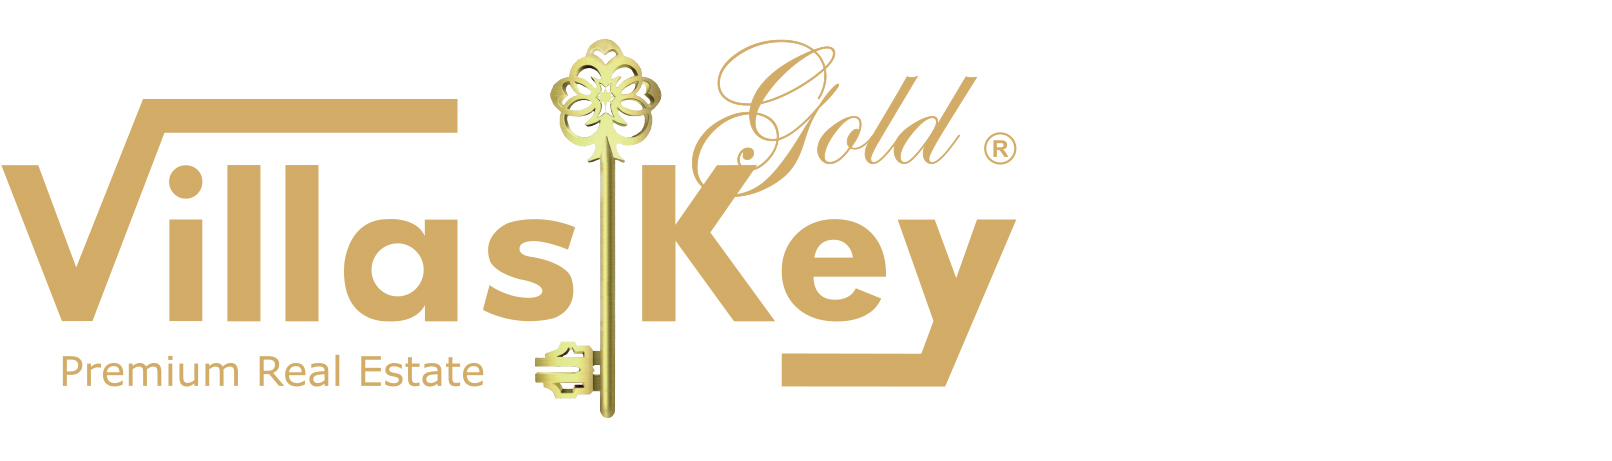 Villas Key Gold - Guia Imobiliário